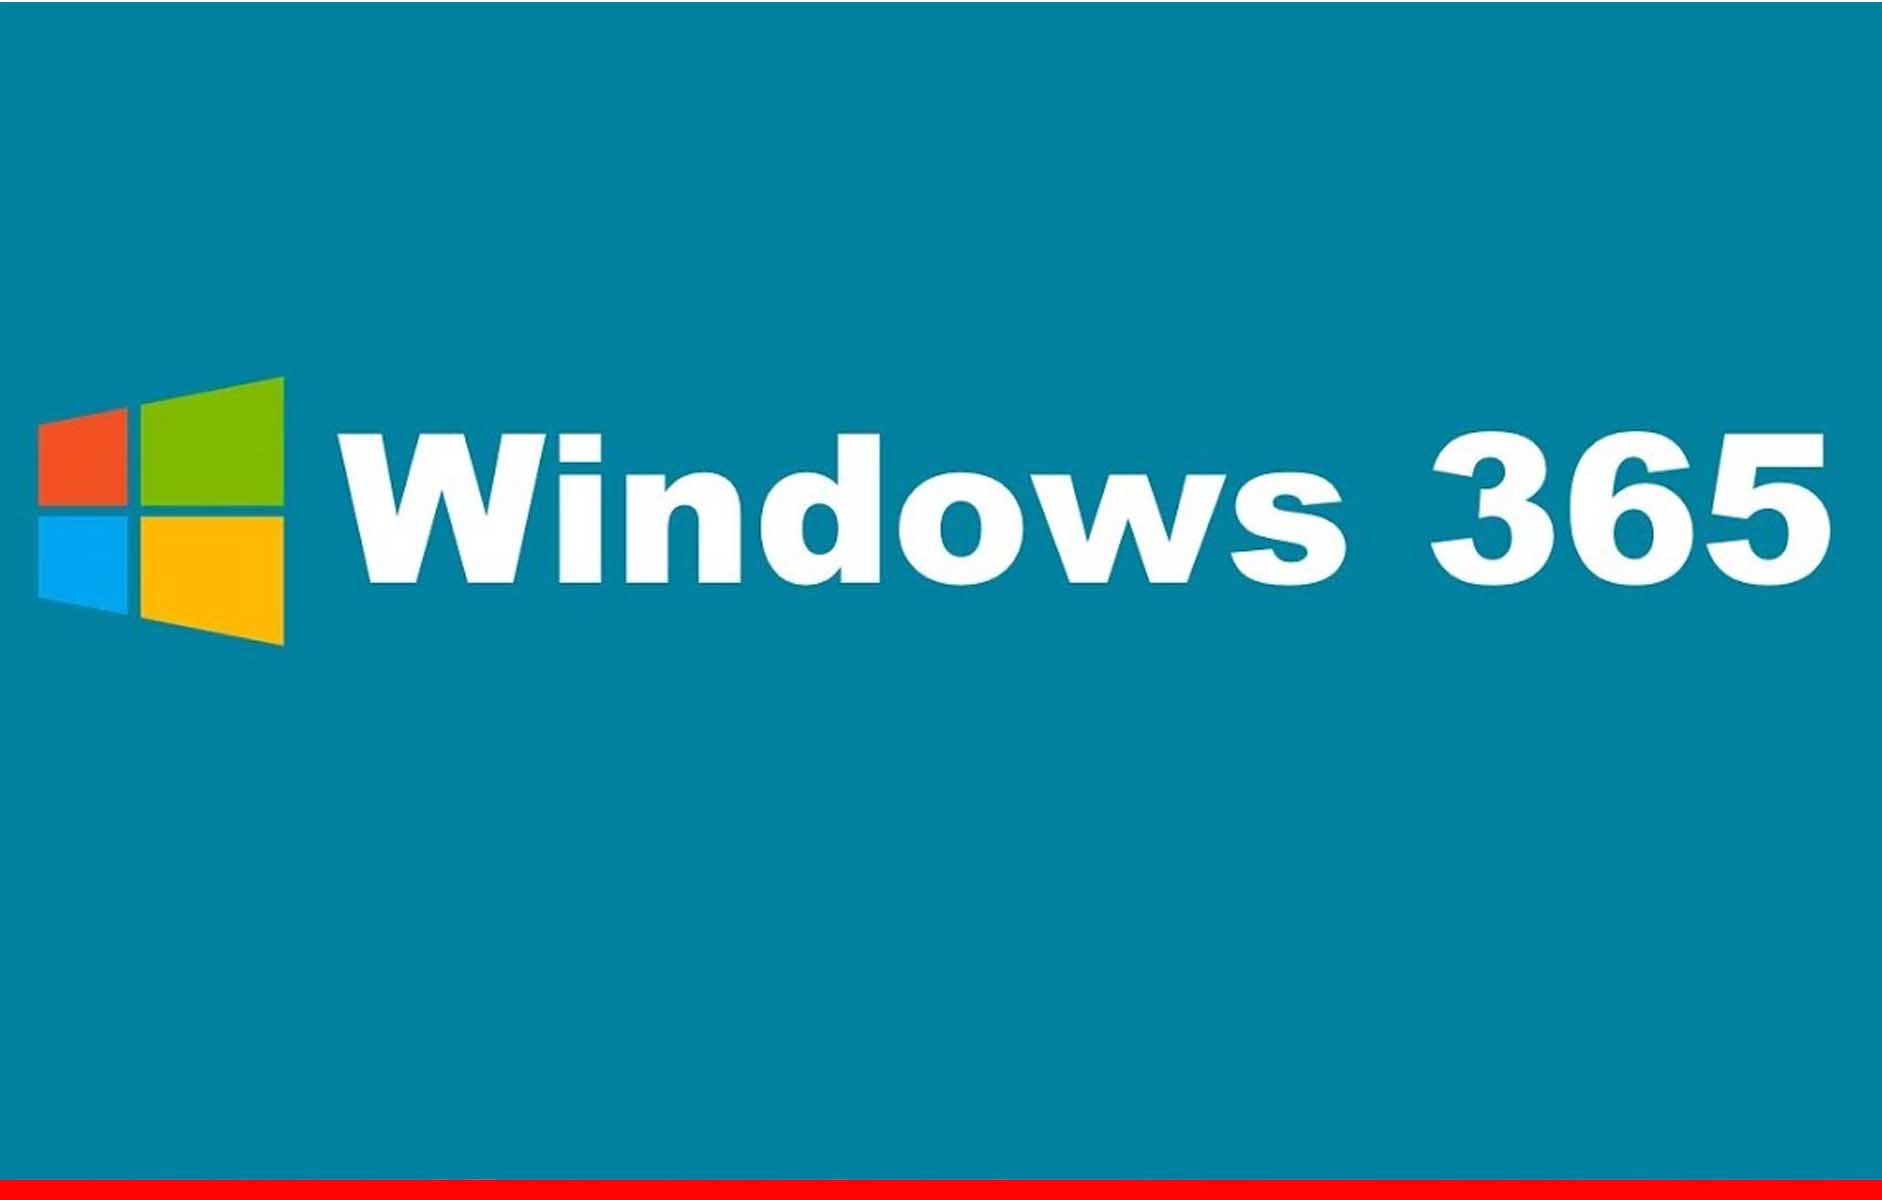 Microsoft ने लॉन्च किया विंडोज 365, किसी भी डिवाइस पर चलेगा Windows OS